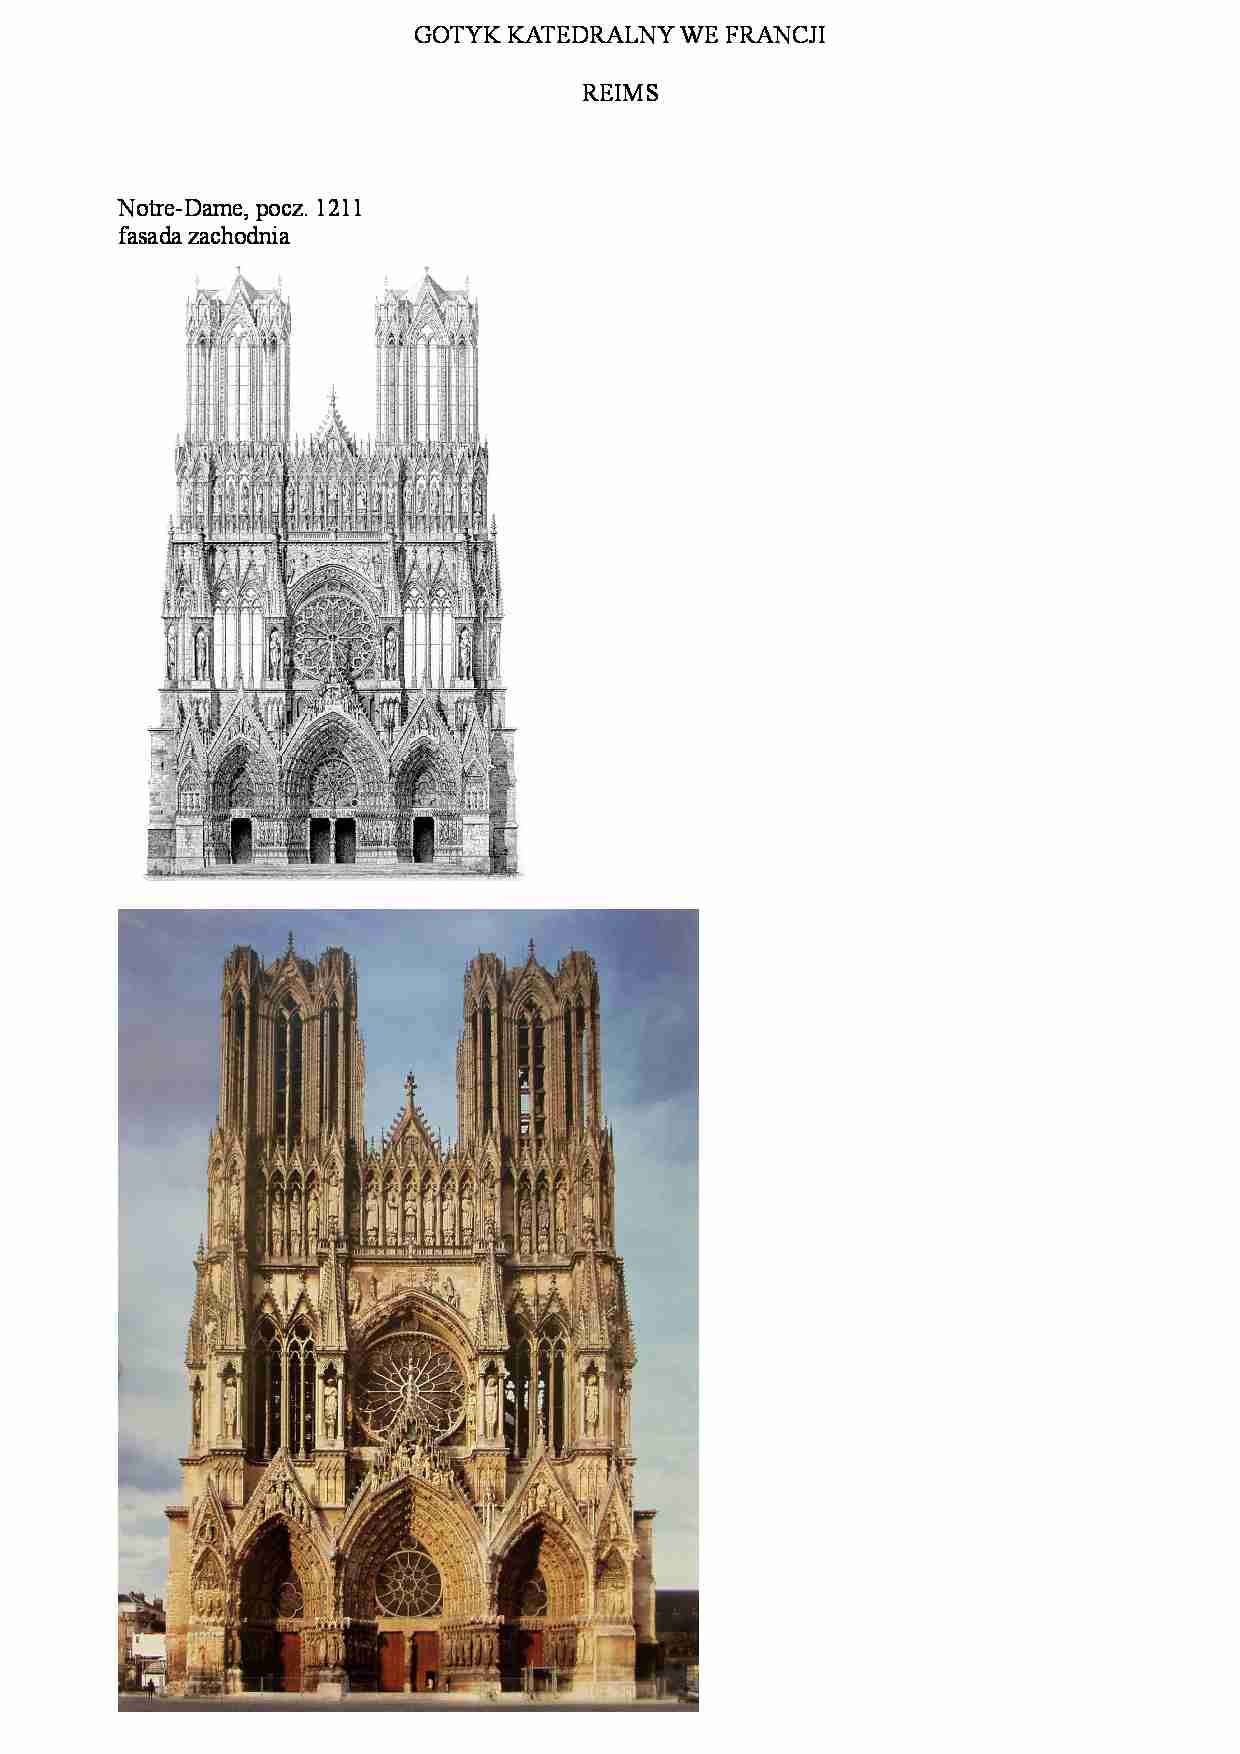 Gotyk katedralny we Francji-Reims - strona 1